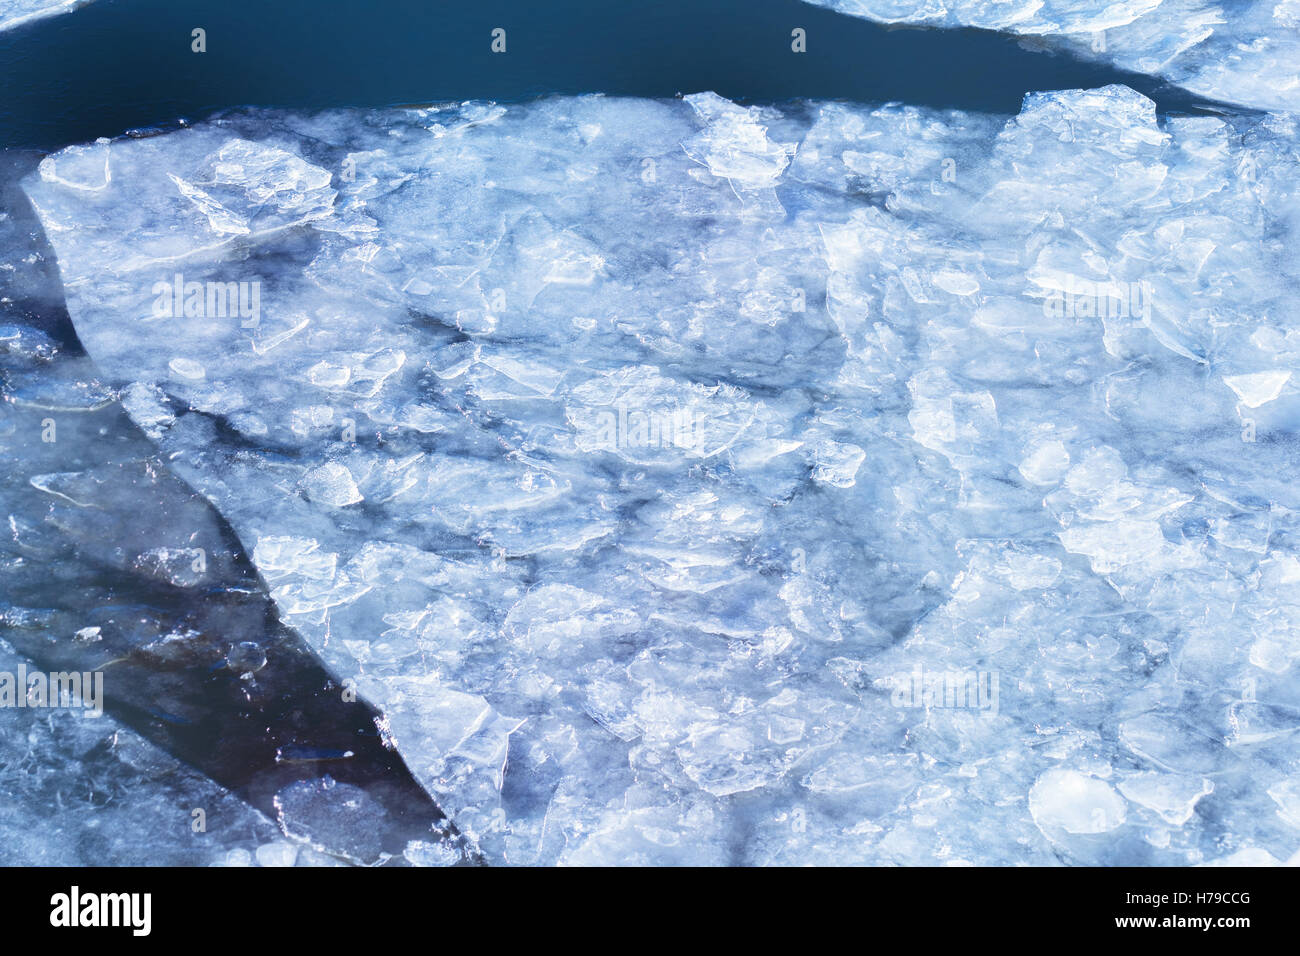 Grande glace dans l'eau bleue en hiver jour nuageux Banque D'Images